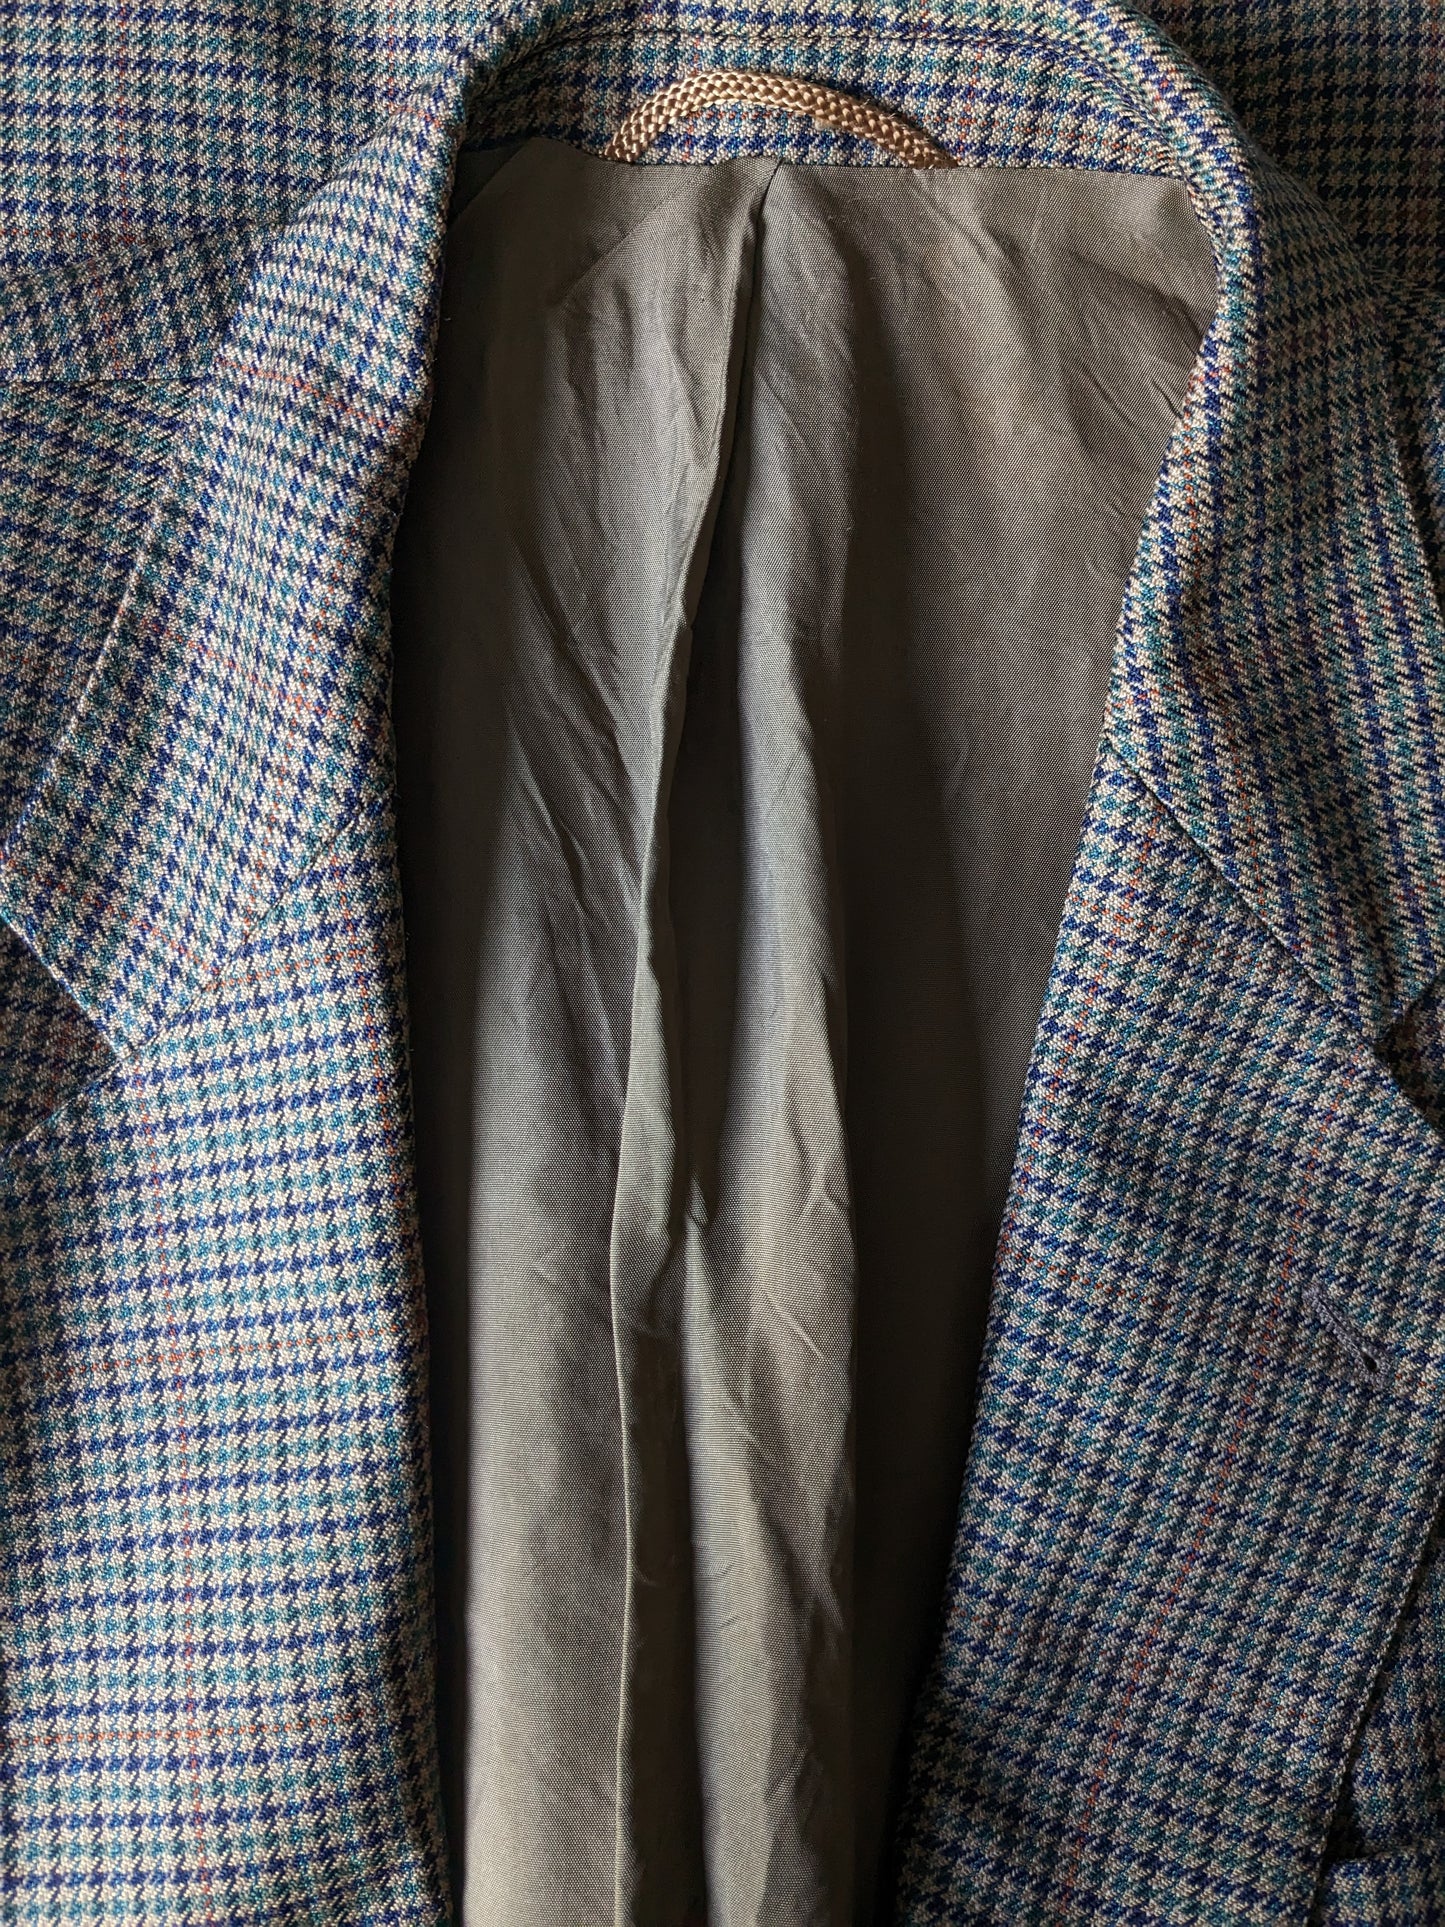 John G Hardy woolen jacket. Brown motif with blue green orange stripe. Size 52 / L.